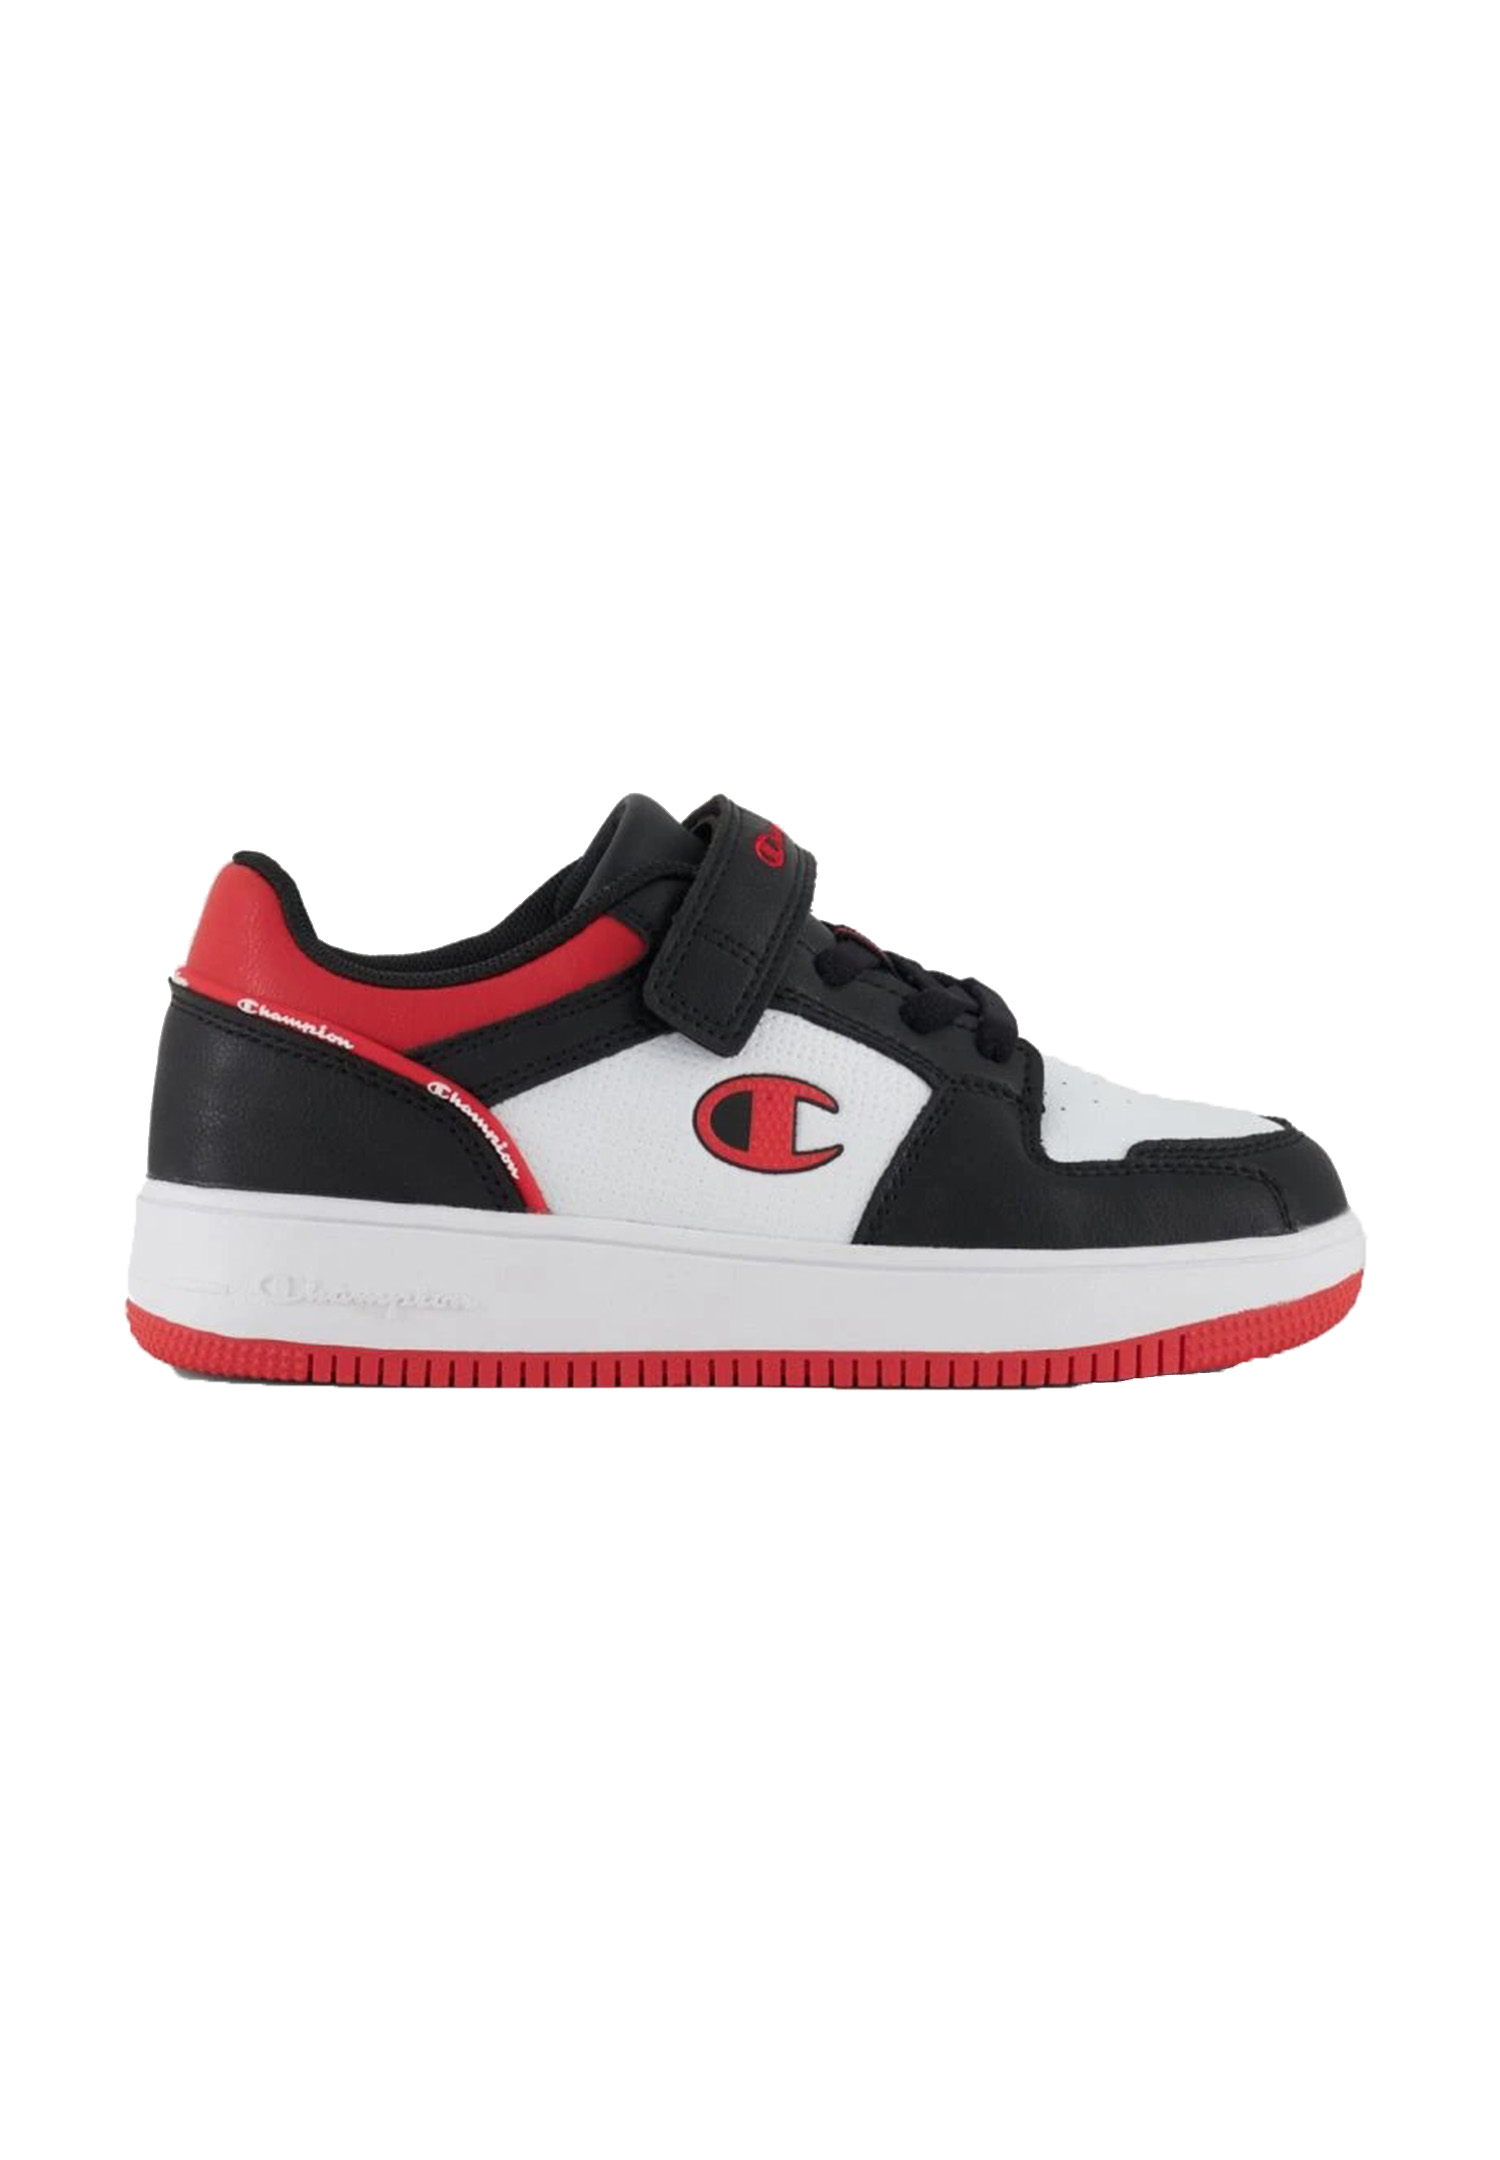 Champion REBOUND 2.0LOW Kinder Sneaker Unisex S32414-CHA-KK003 weiss/schwarz/rot 